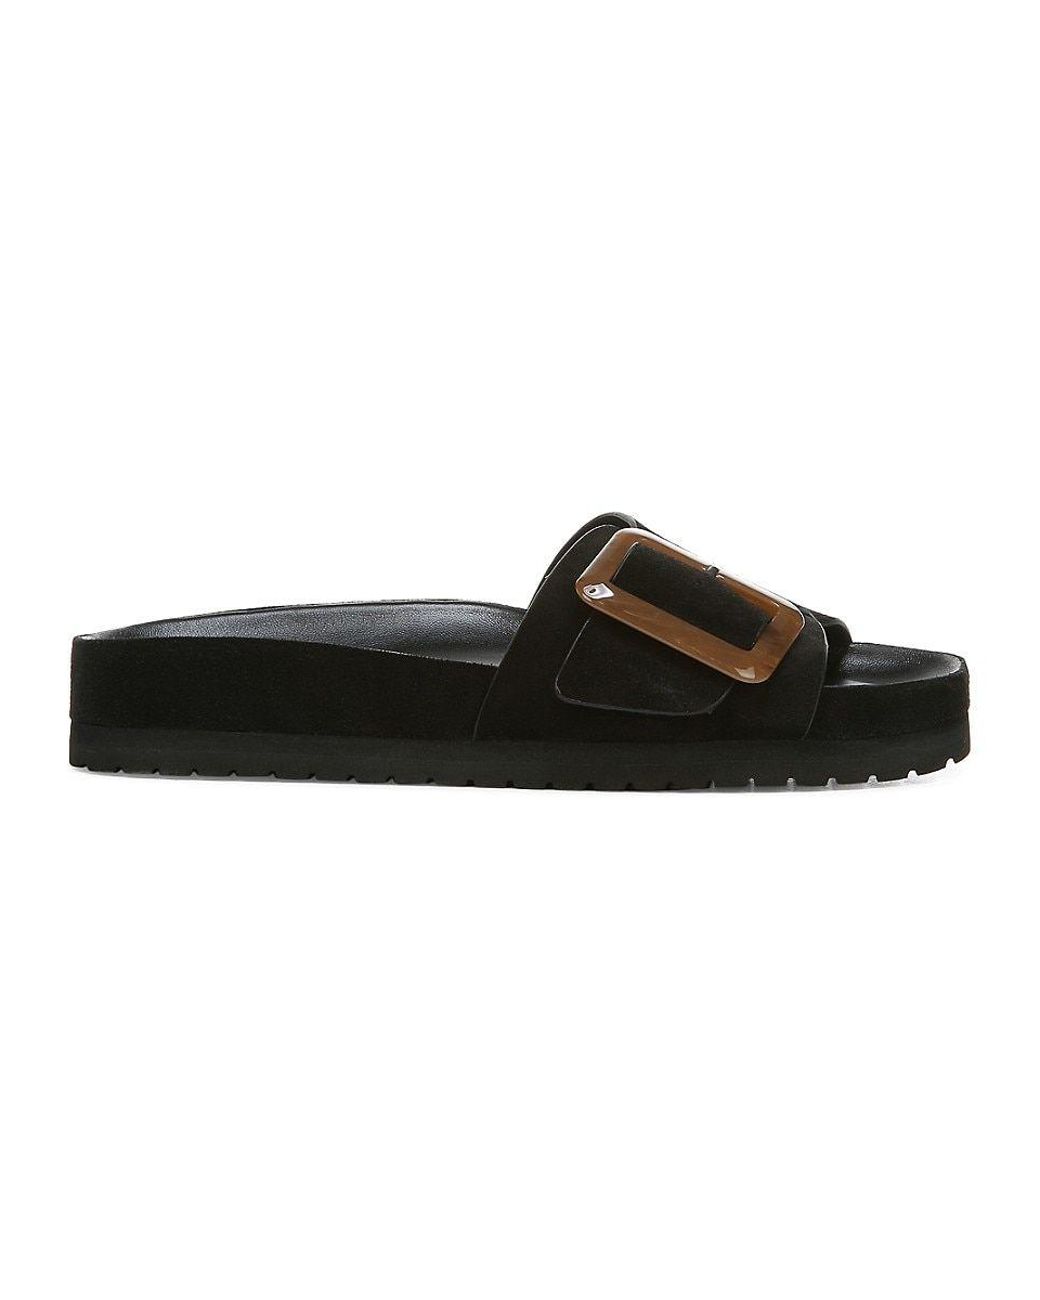 Vince Grant Leather Platform Sandals in Black | Lyst